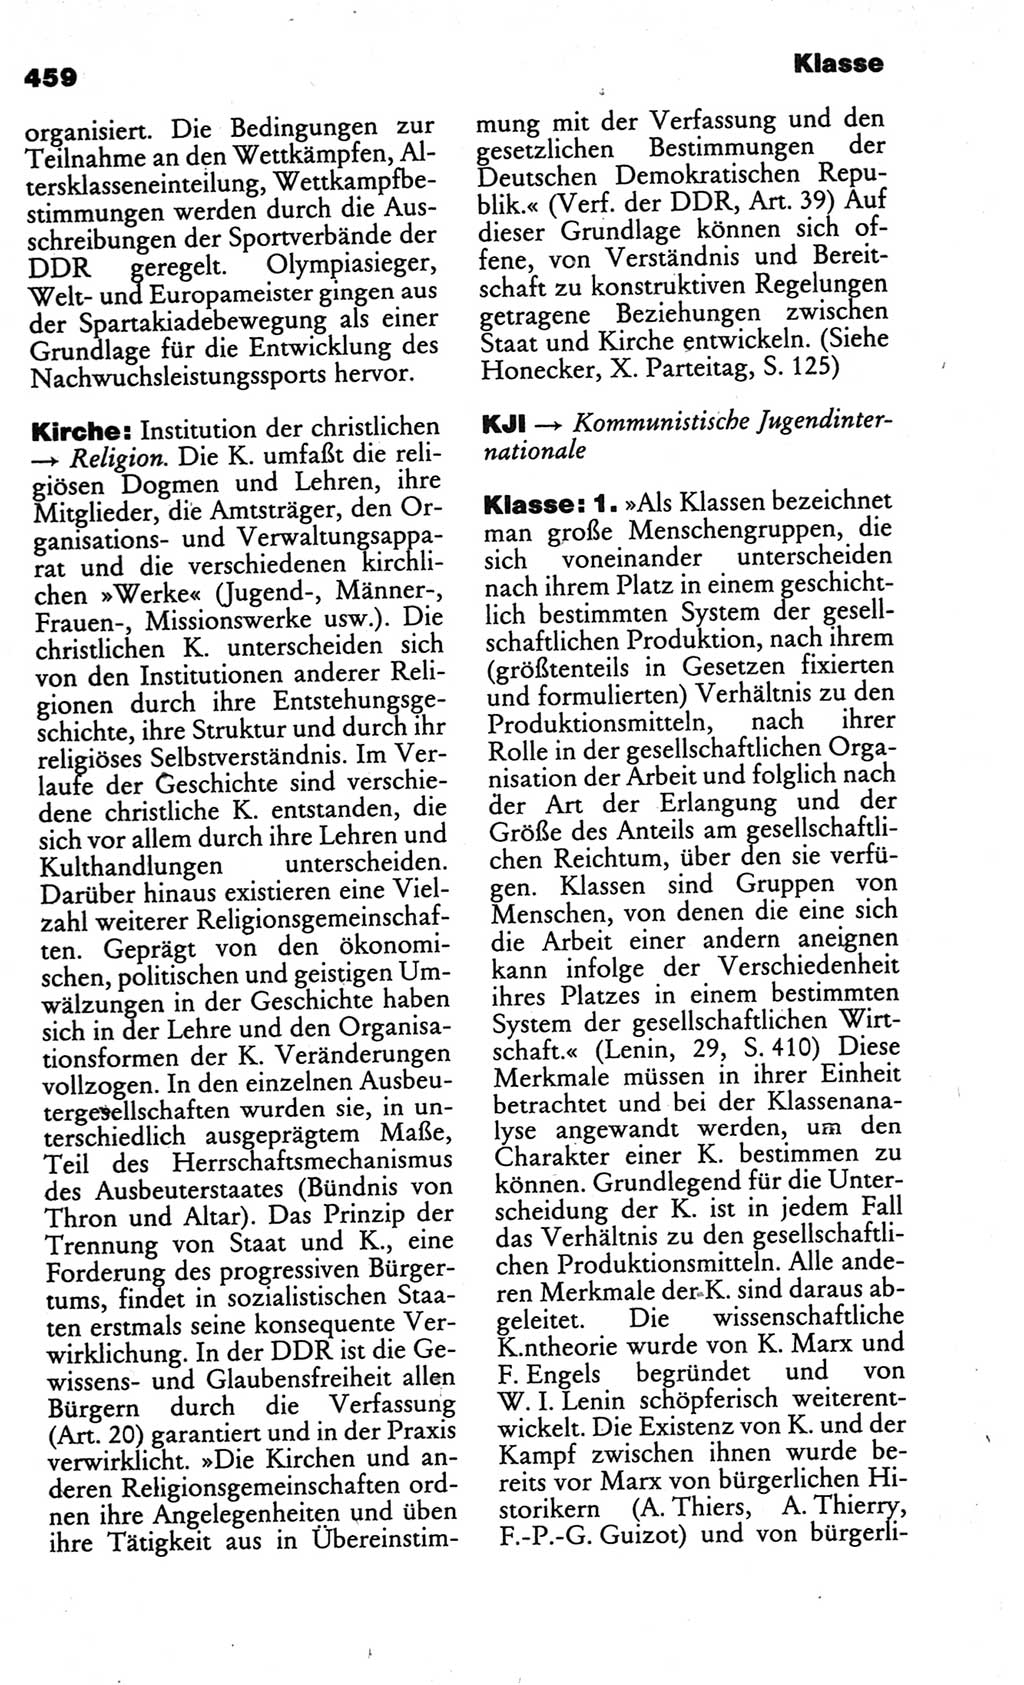 Kleines politisches Wörterbuch [Deutsche Demokratische Republik (DDR)] 1986, Seite 459 (Kl. pol. Wb. DDR 1986, S. 459)